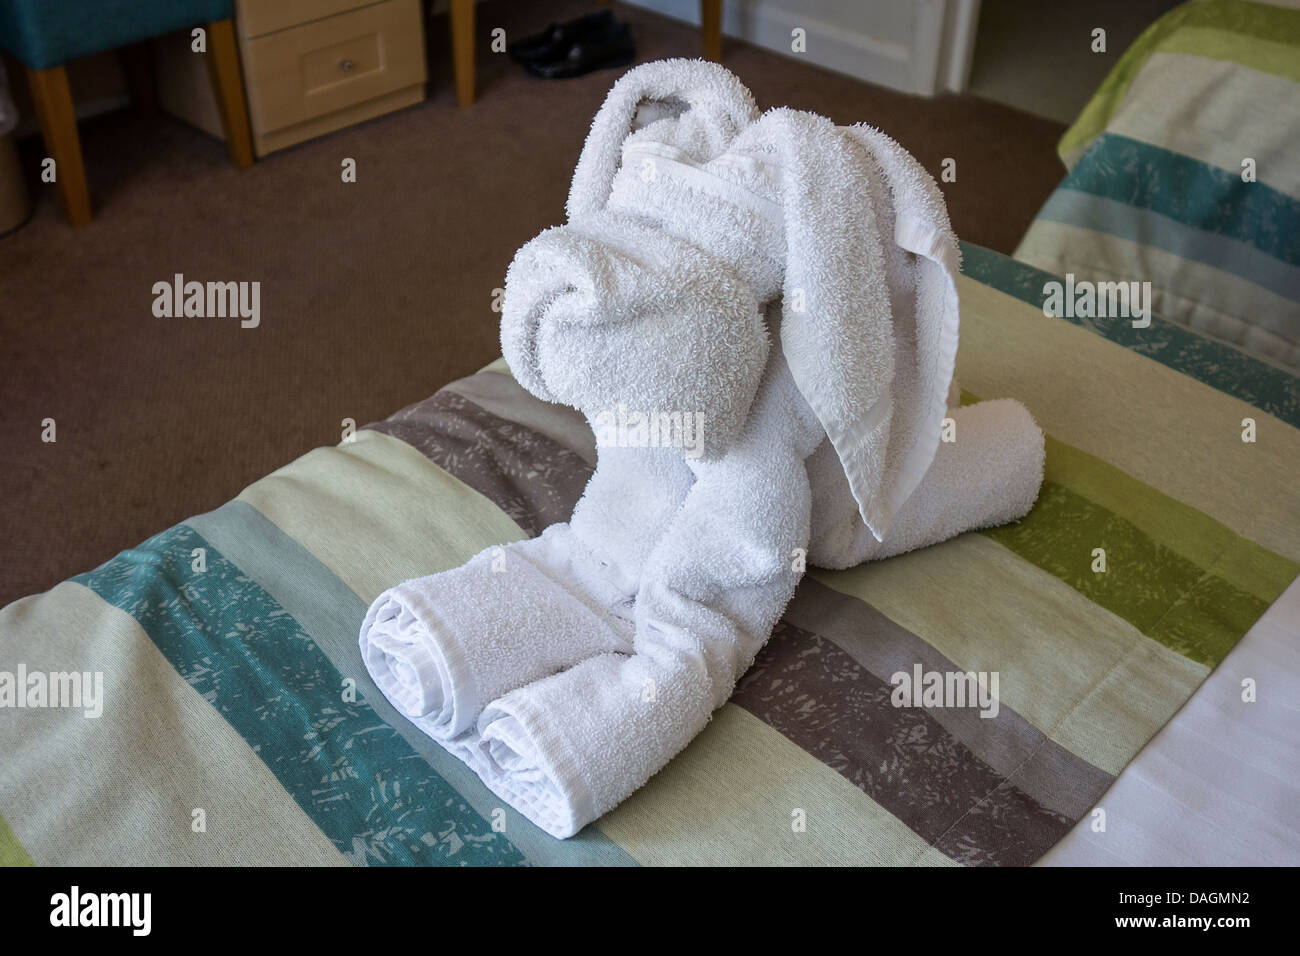 Immagini Stock - Cane Avvolto In Un Asciugamano In Bagno. Illustrazione  3D.. Image 200540828